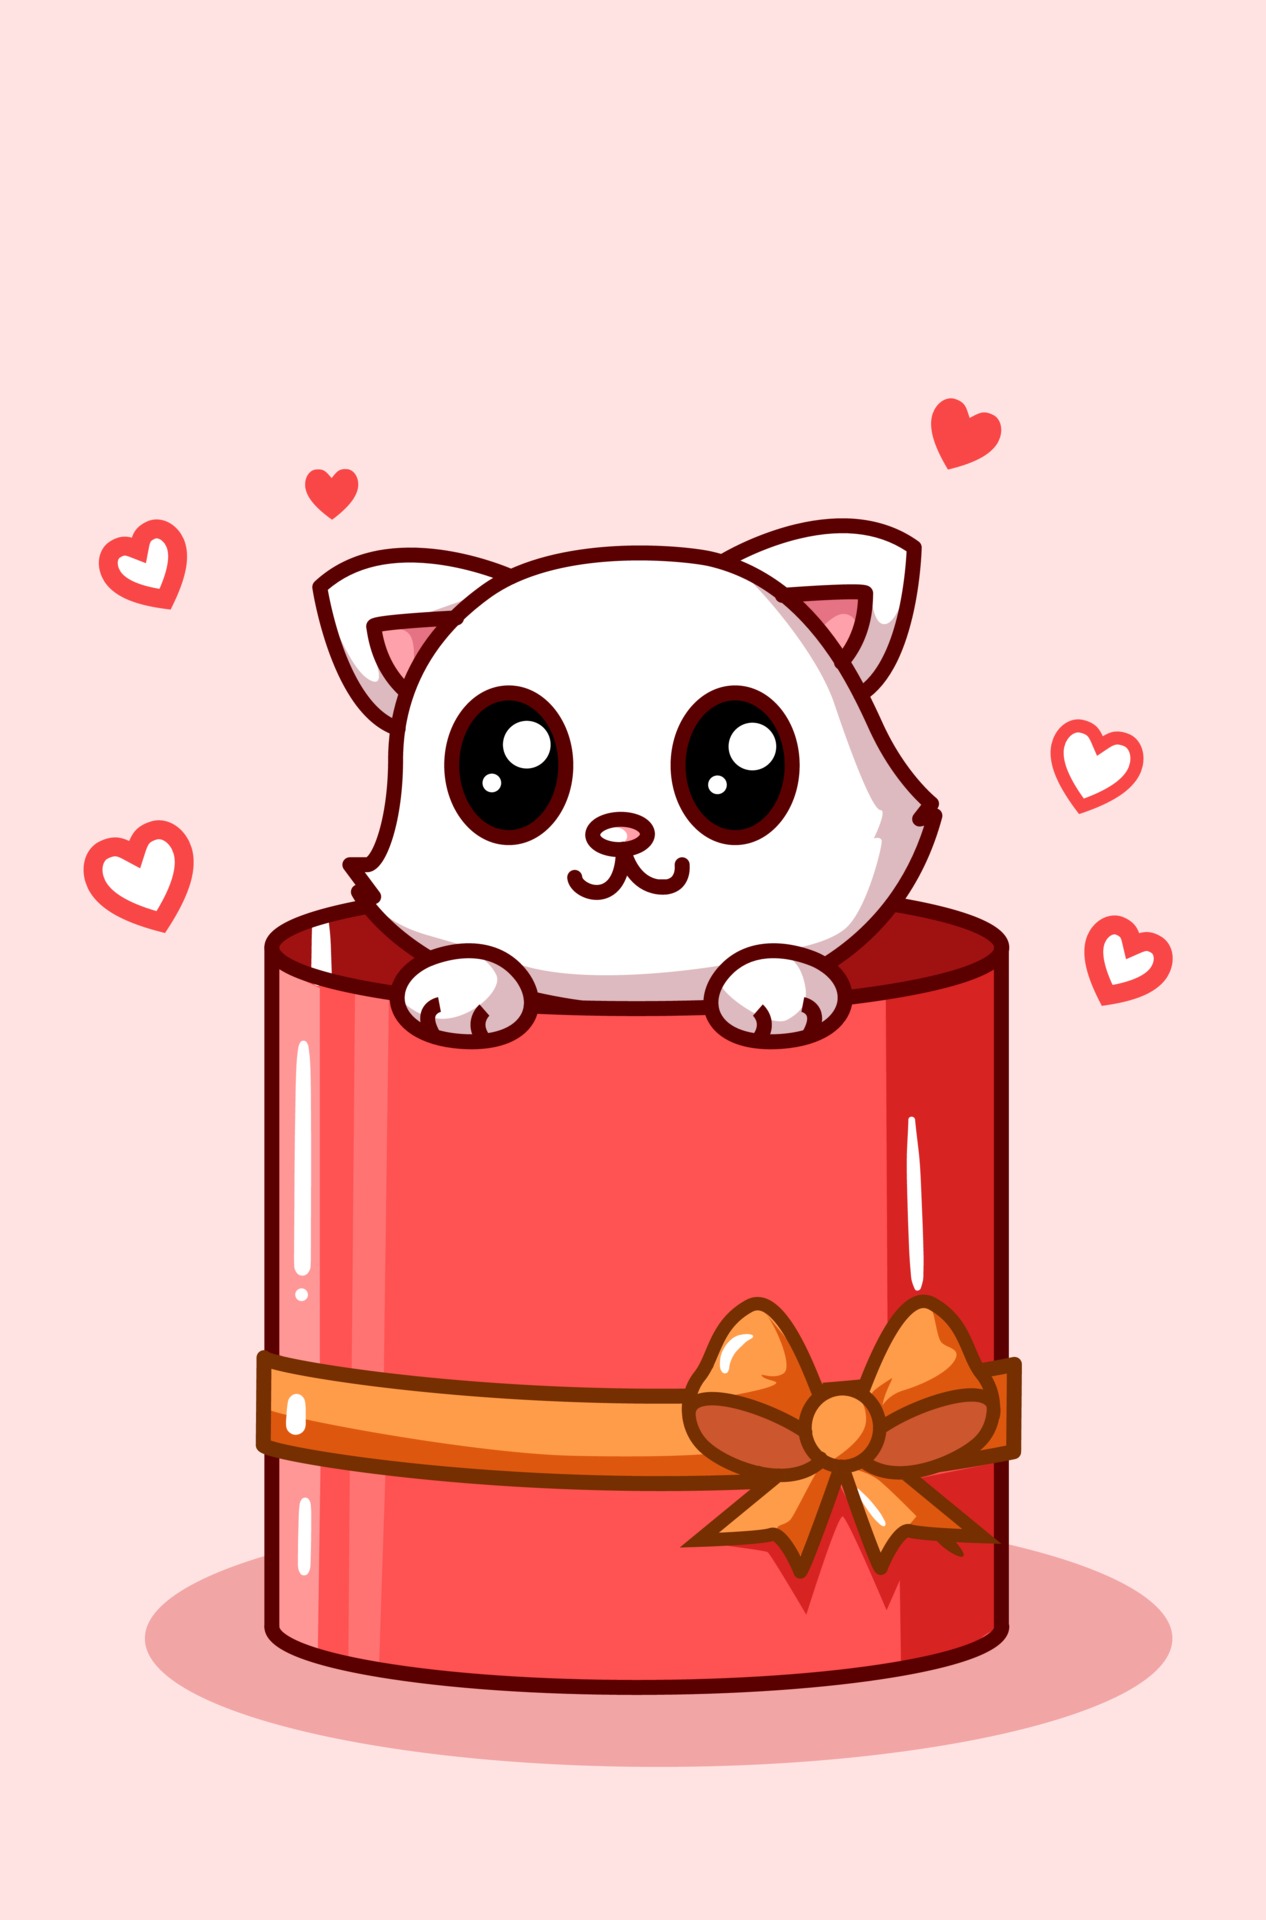 Kawaii cat in the valentine box present cartoon illustration